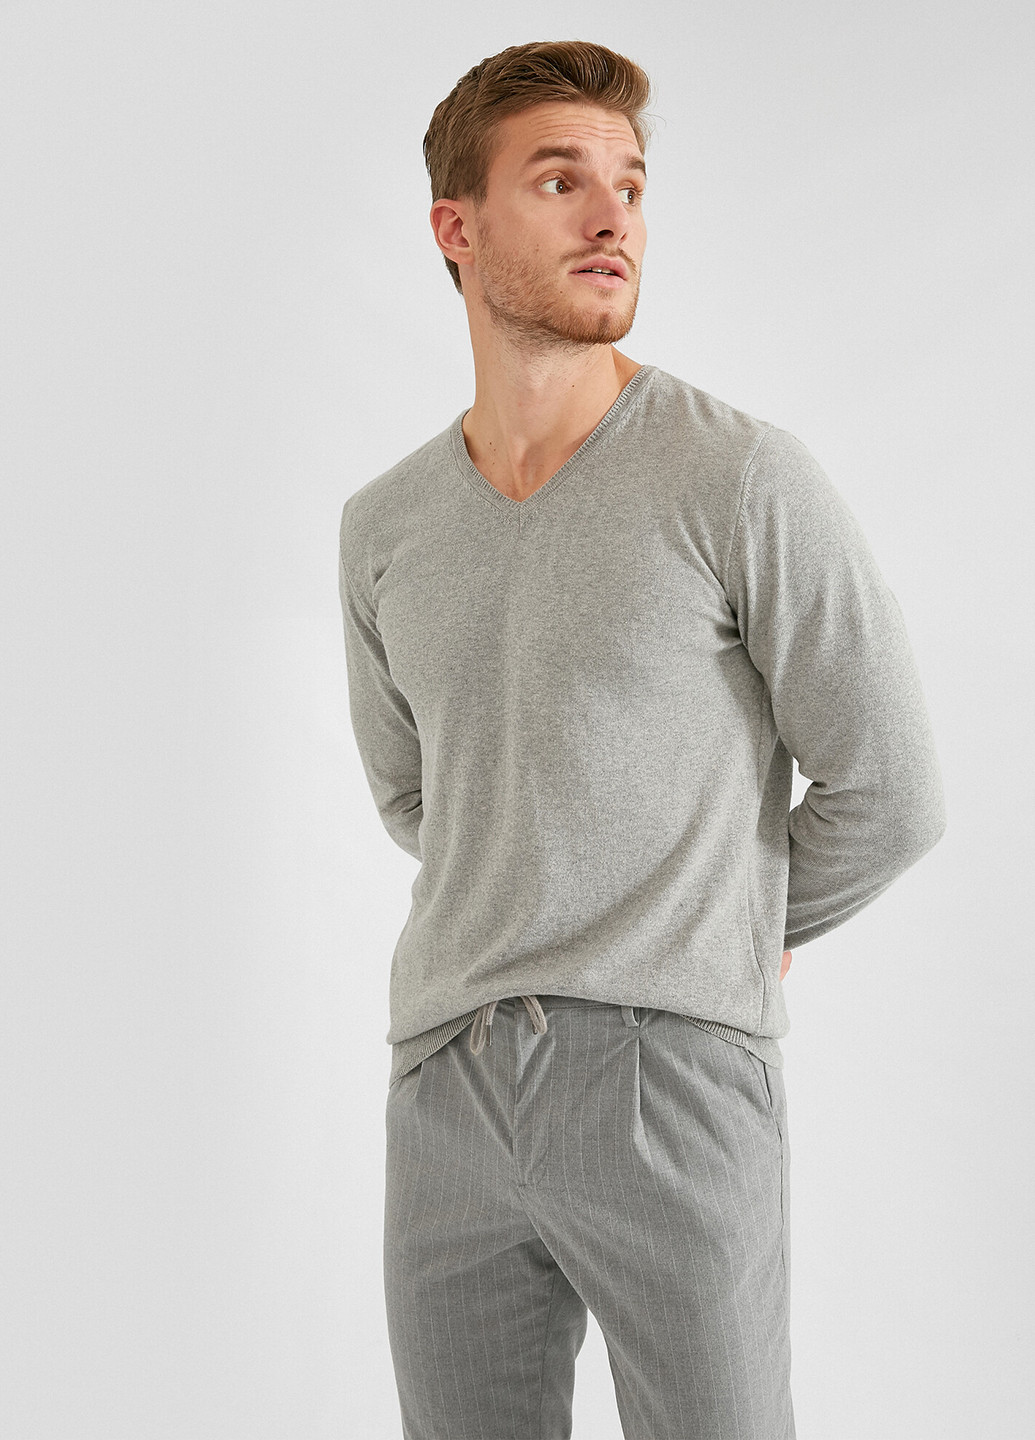 Светло-серый демисезонный пуловер пуловер KOTON